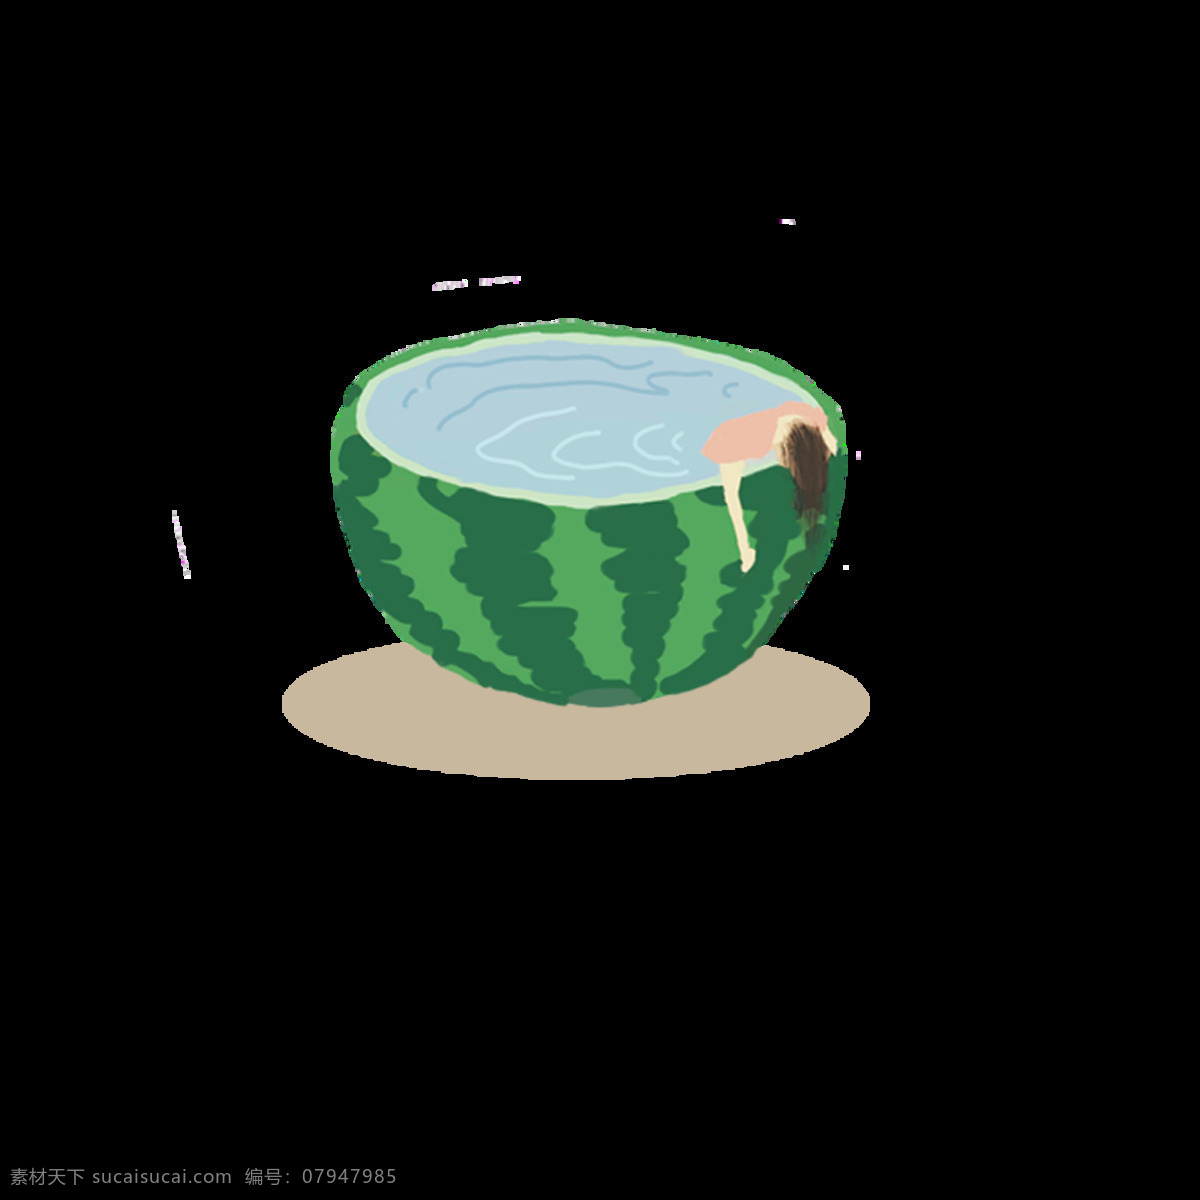 夏日 西瓜 季 清晰 原创 商用 夸张 创意 插画 元素 绿色 小清新 平涂